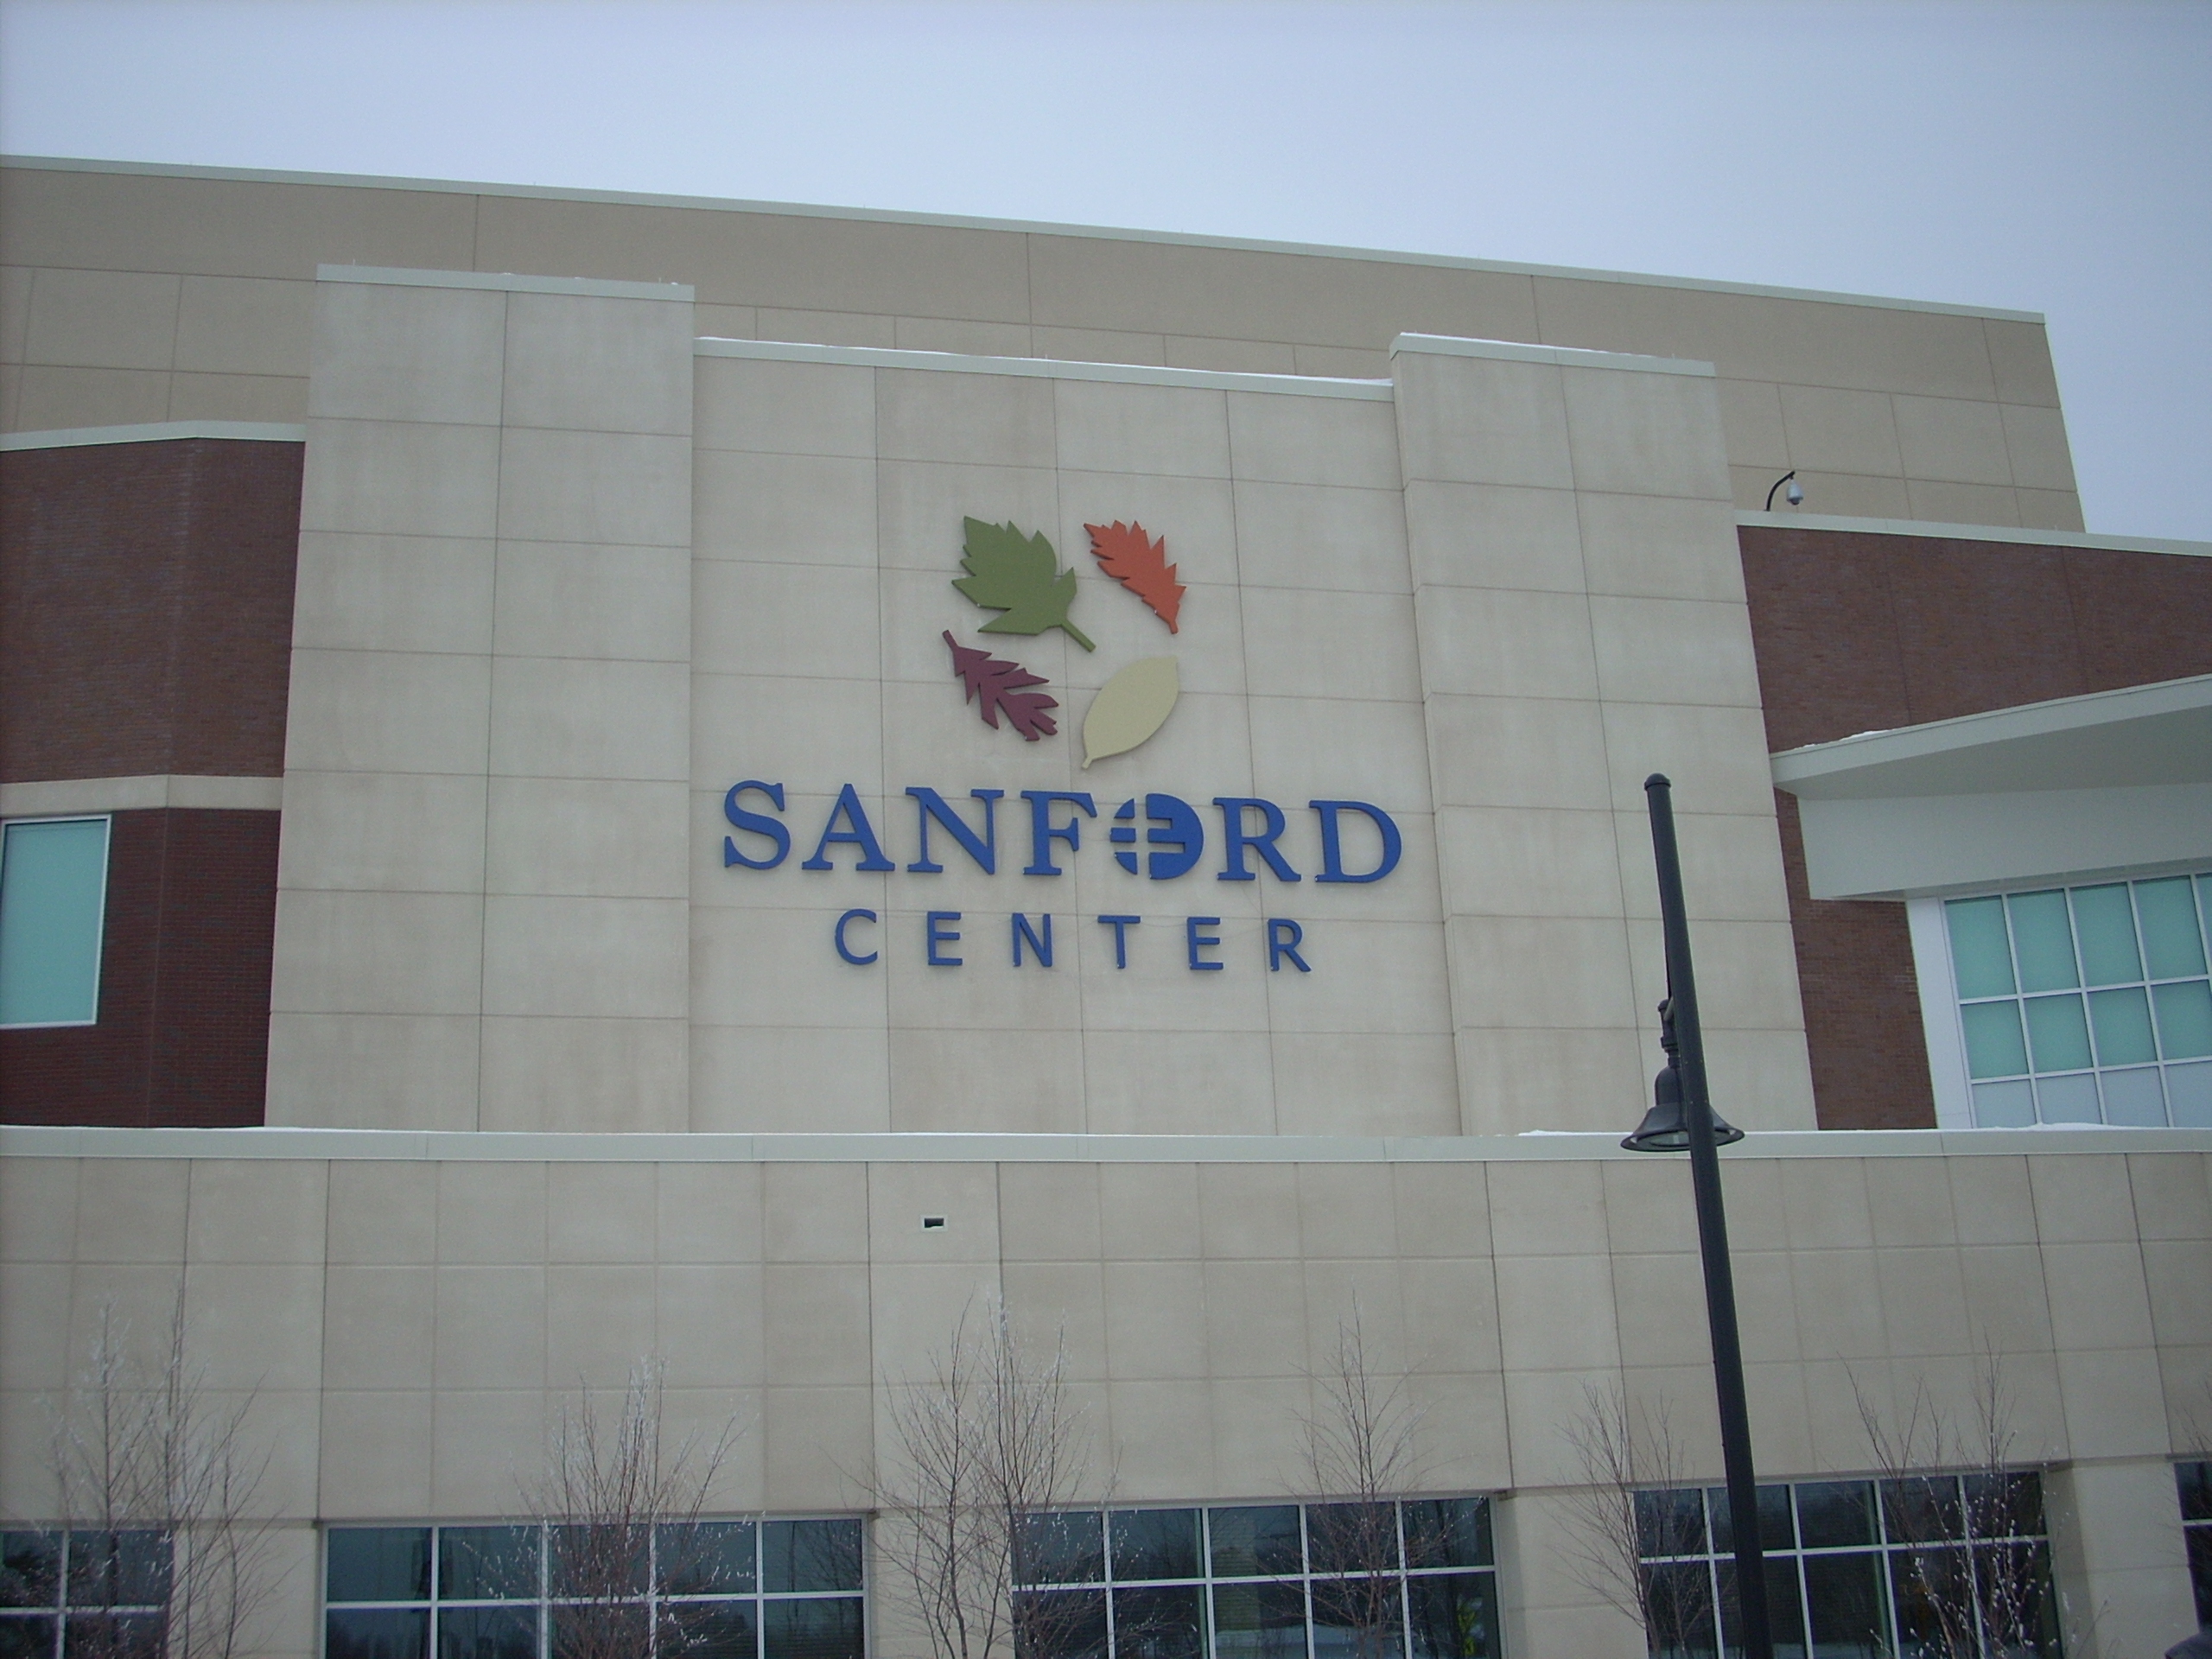 Sanford Center Channel Letter Sign